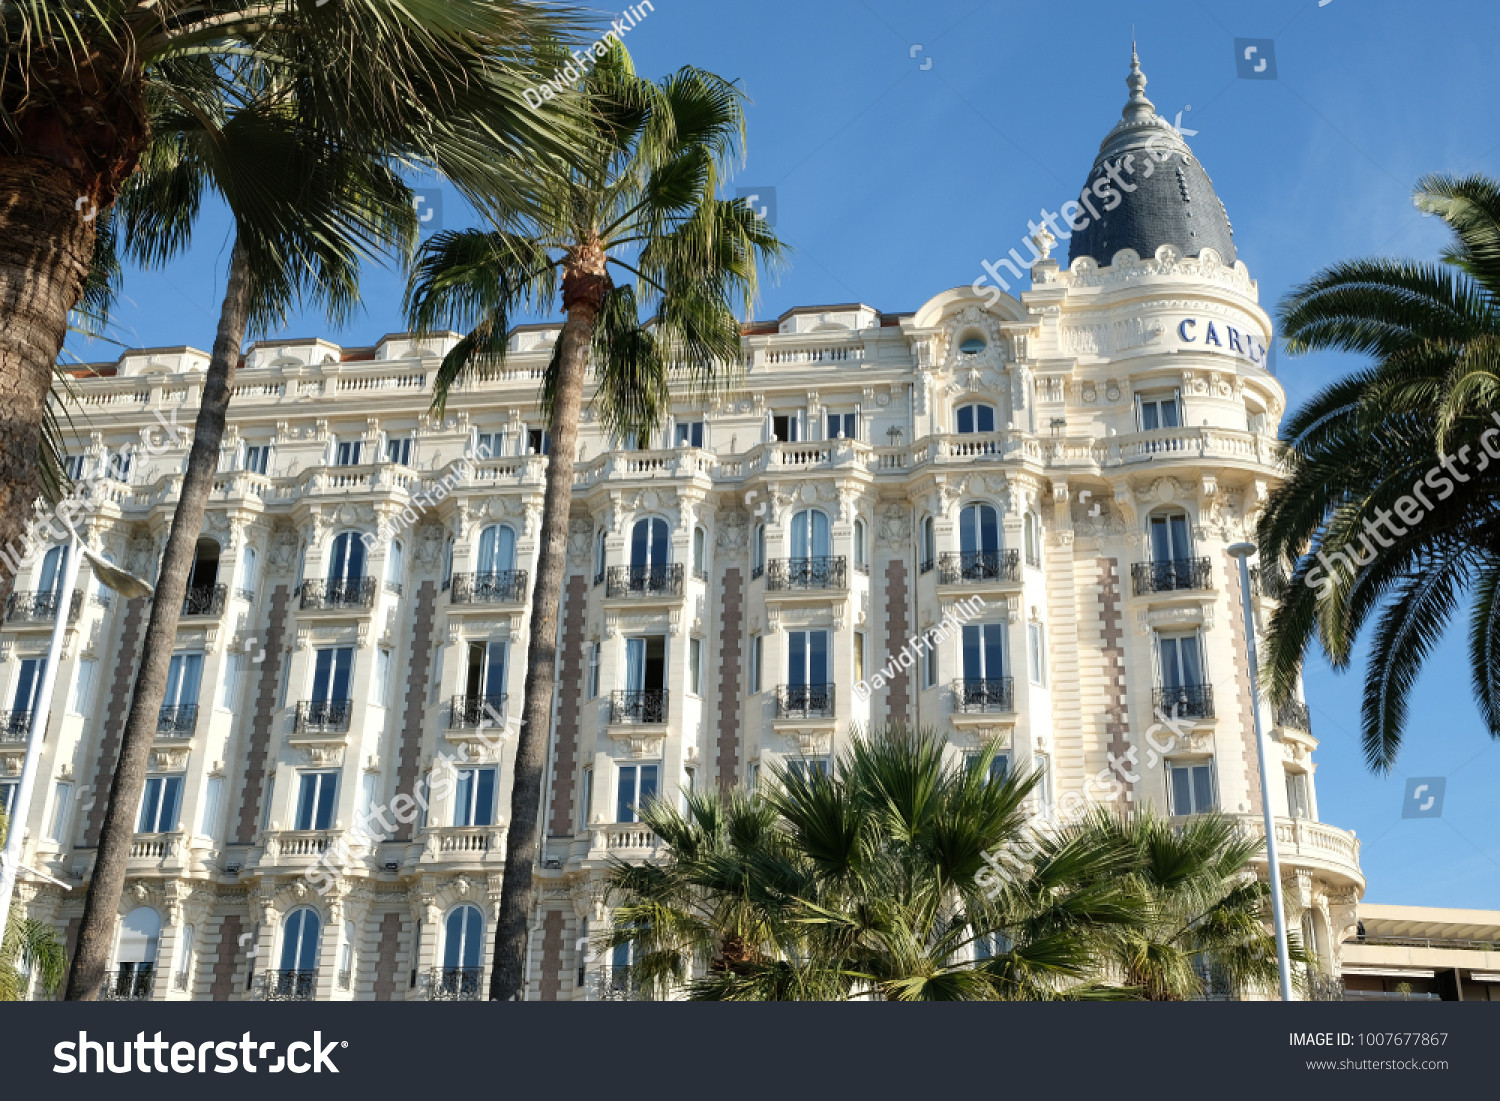 NEUF Cannes Carlton Hôtel bois souvenir voyage magnétique France FRANCE